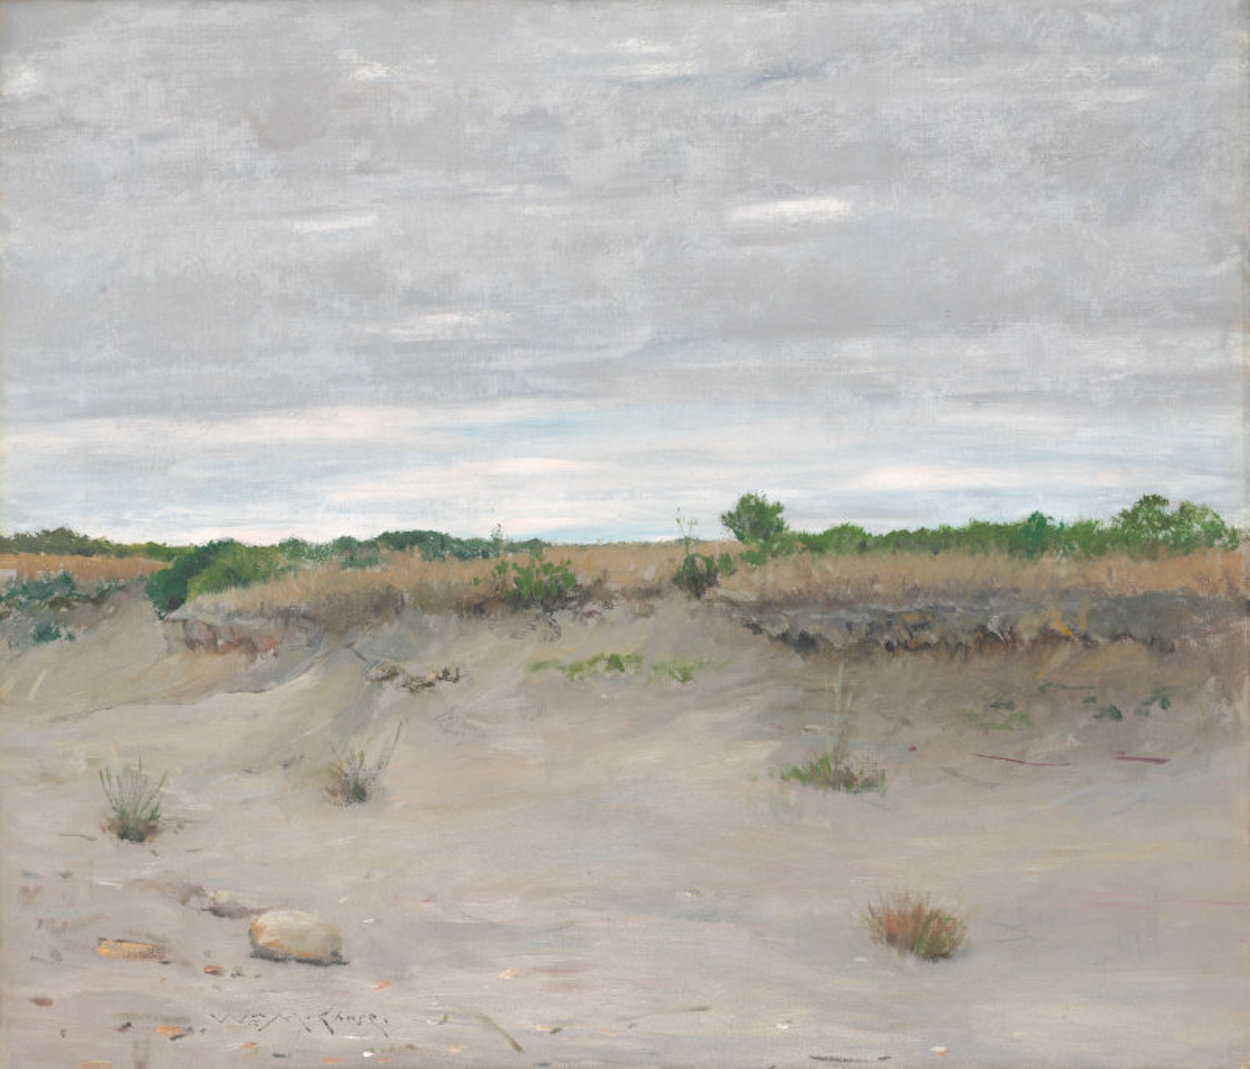 荒凉的沙地 by 威廉 梅里特 蔡斯 - 1894 芝加哥藝術博物館